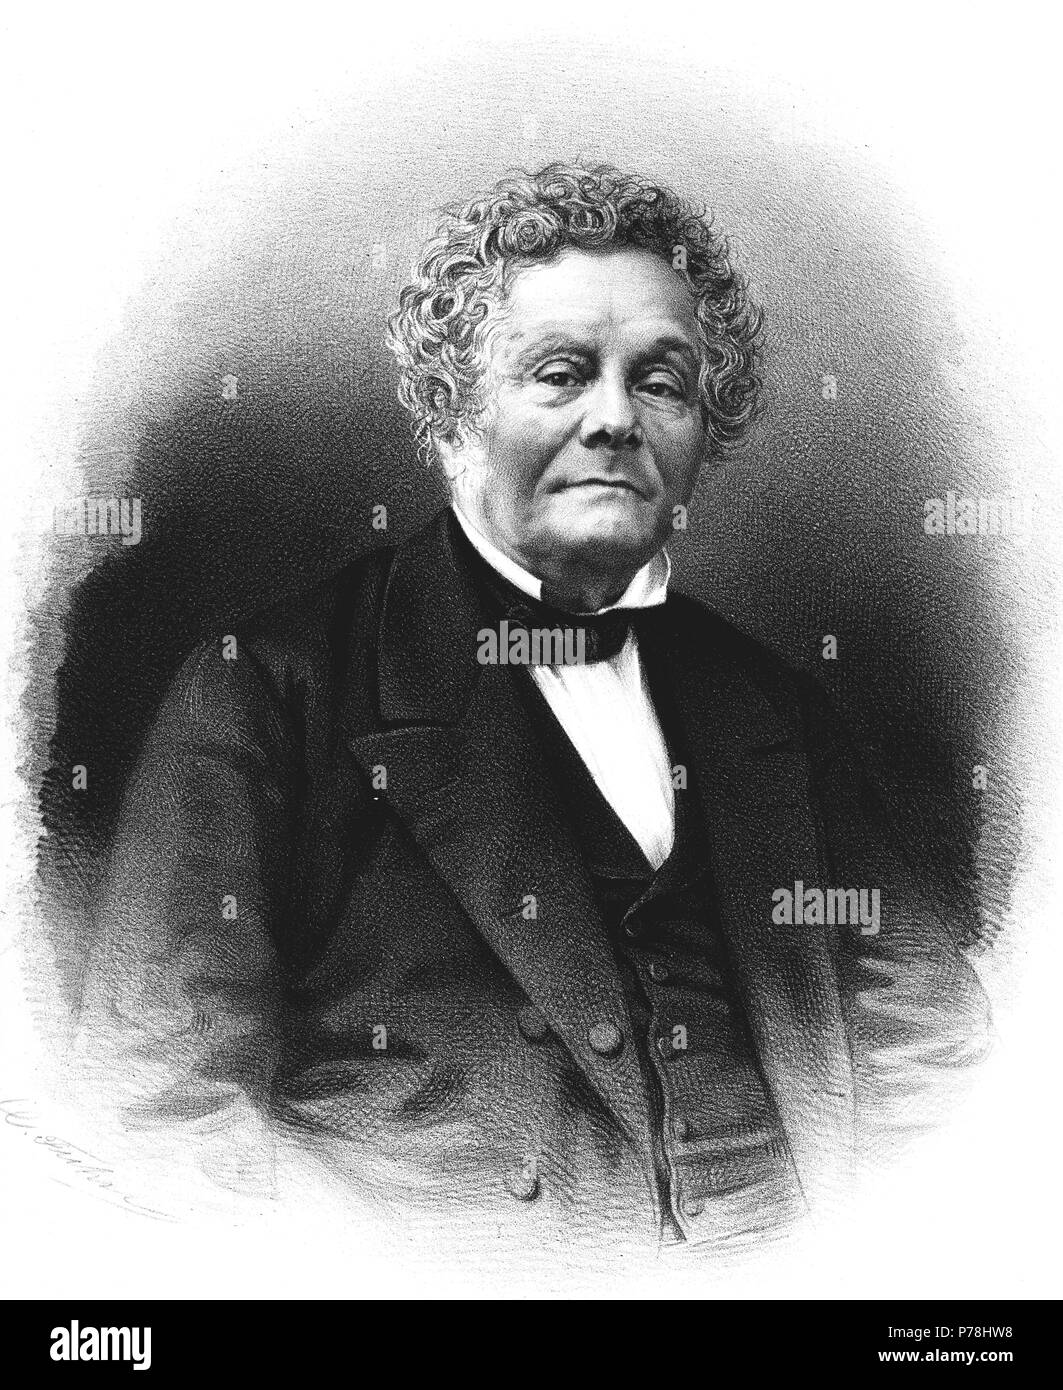 Cremieux, Isaac Adolphe (1796-1880), político francés. Grabado de 1865. Stock Photo